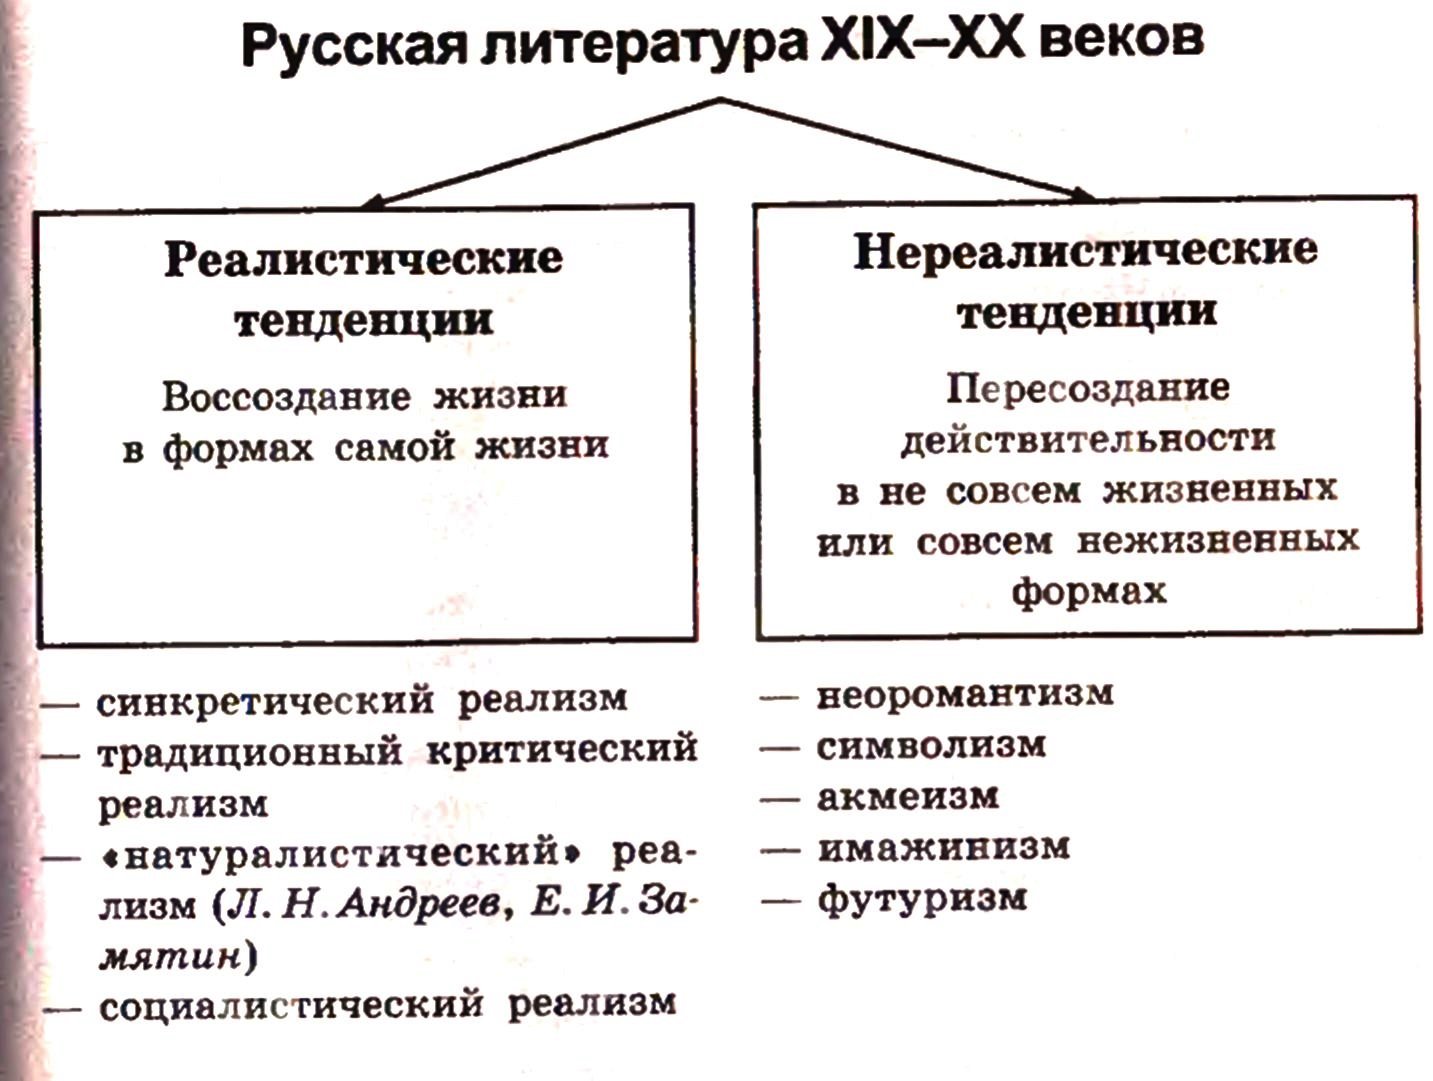 Русская литература XIX-XX веков